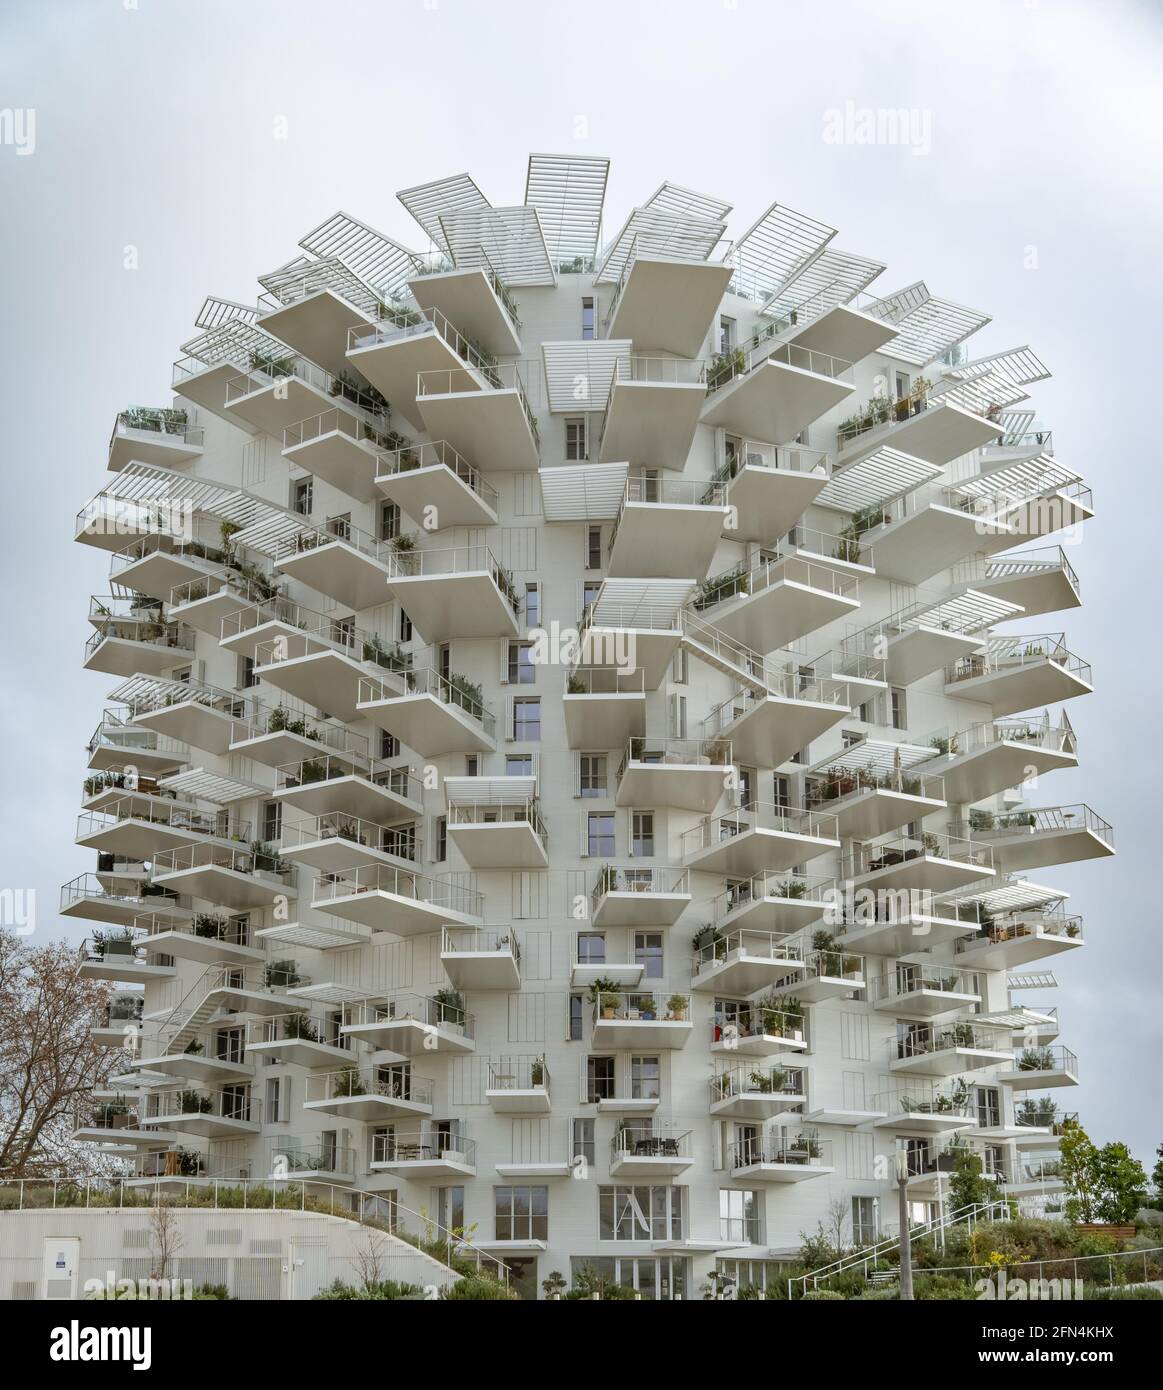 Das ikonische Gebäude L'arbre Blanc in Montpellier, Frankreich Stockfoto